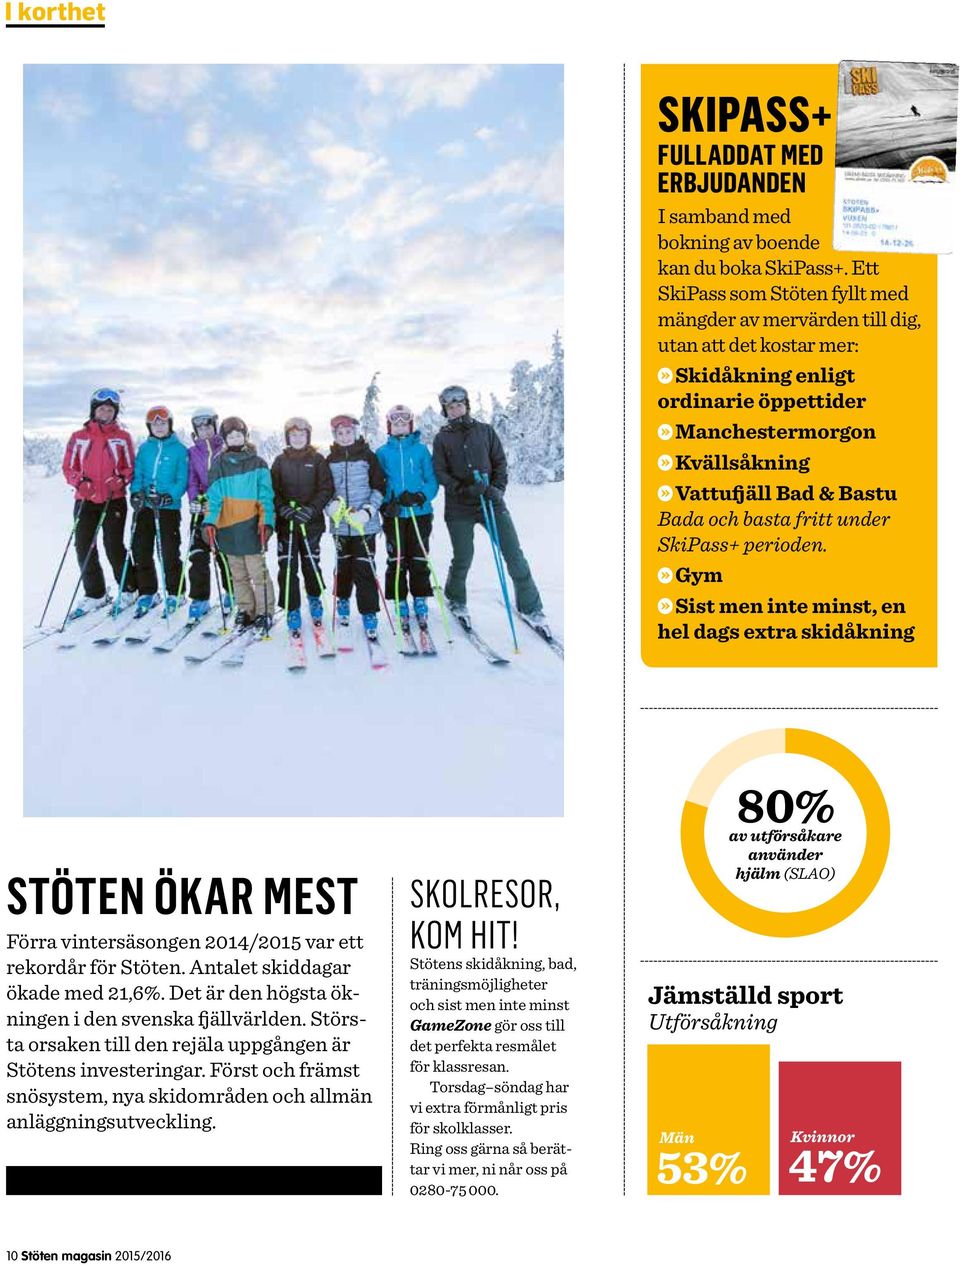 fritt under SkiPass+ perioden. Gym Sist men inte minst, en hel dags extra skidåkning Stöten ökar mest Förra vintersäsongen 2014/2015 var ett rekordår för Stöten. Antalet skiddagar ökade med 21,6%.